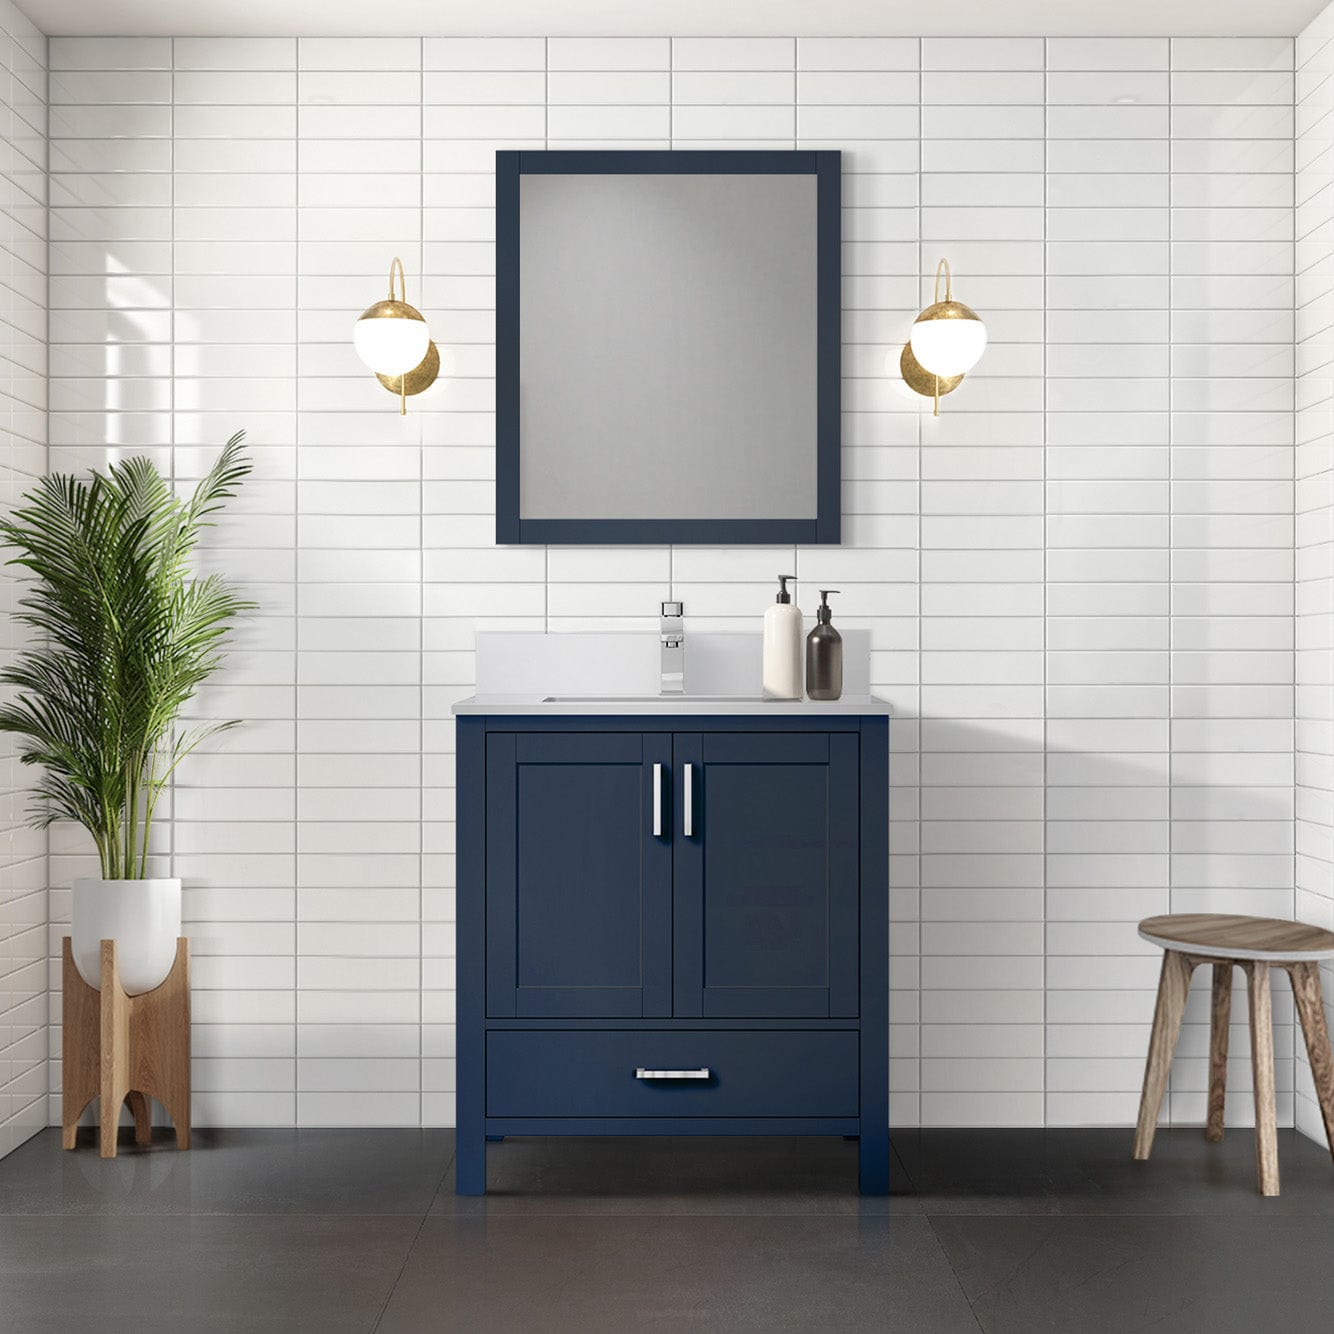 Lexora Bathroom Vanity Navy Blue / Cultured Marble / No Mirror Big Sur 30" x 22" Bath Vanity